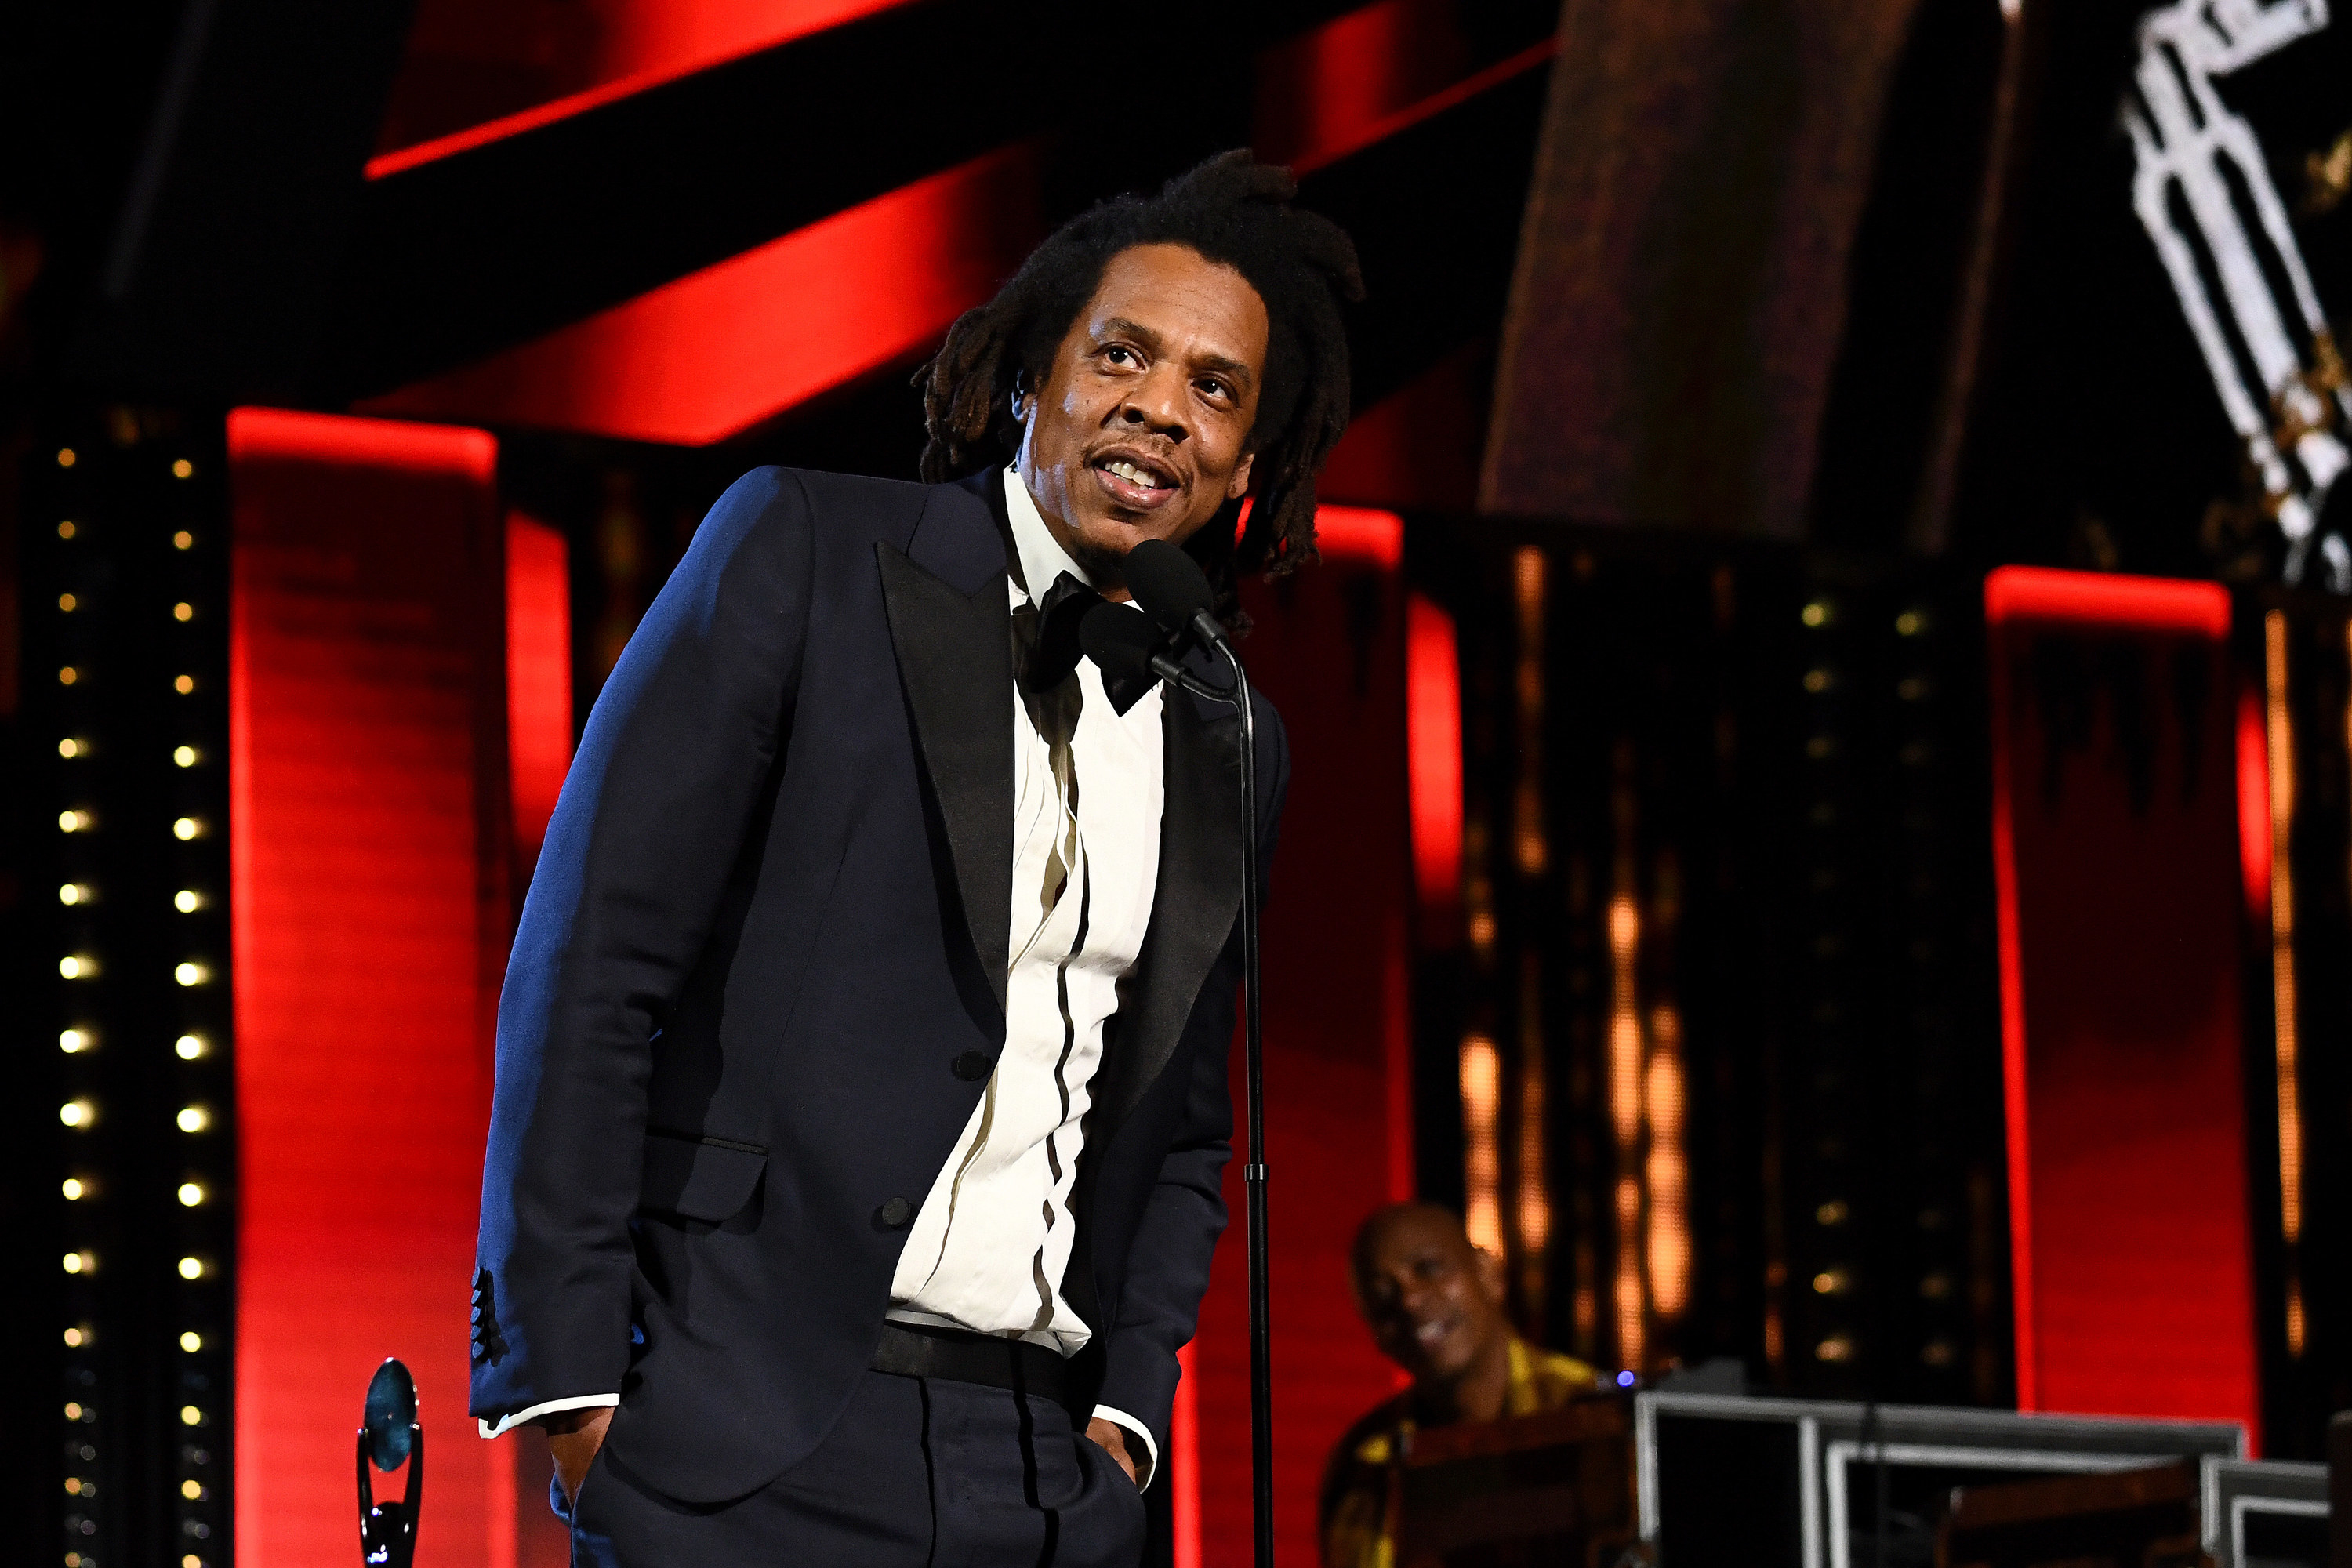 Jay-Z in a tuxedo, smiling